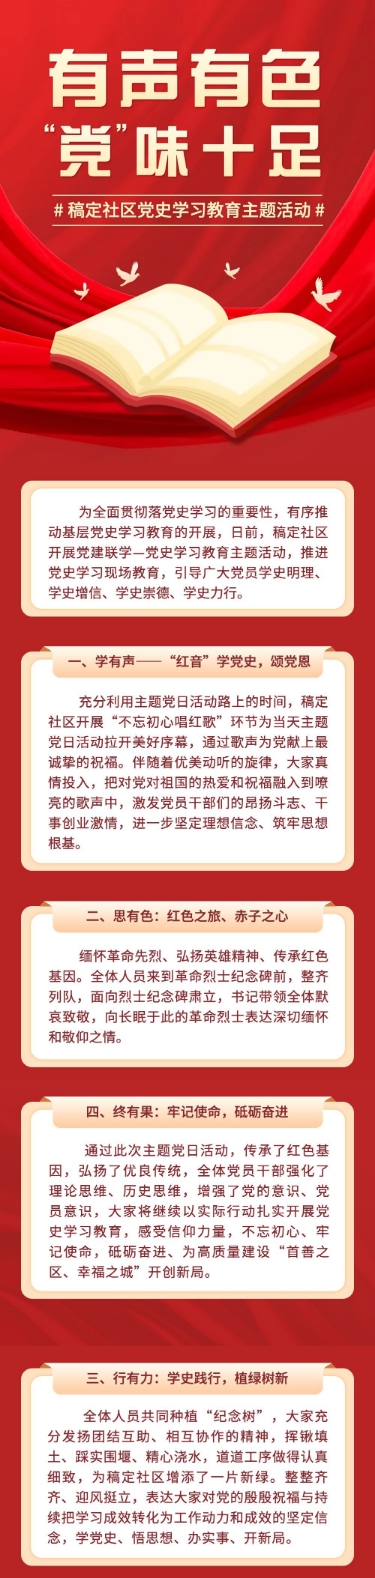 融媒体党建活动文章长图